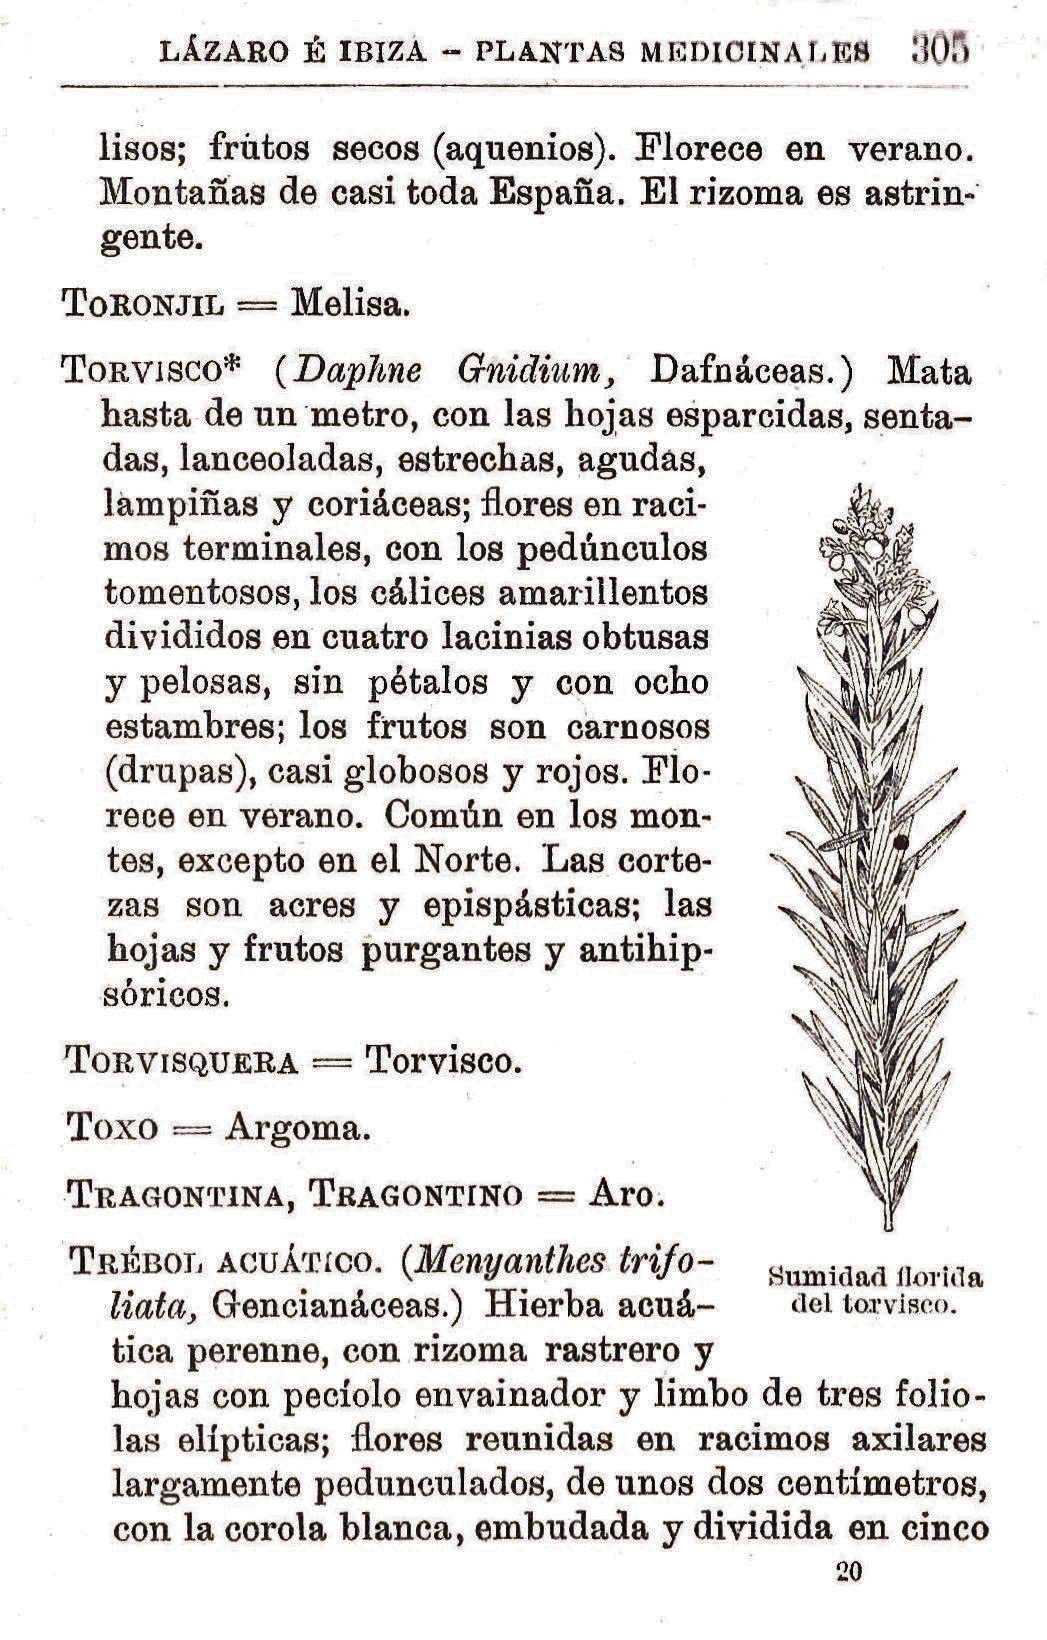 Plantas Medicinales. Blas Lazaro Ibiza. Índice alfabético de plantas. T. Toronjil.